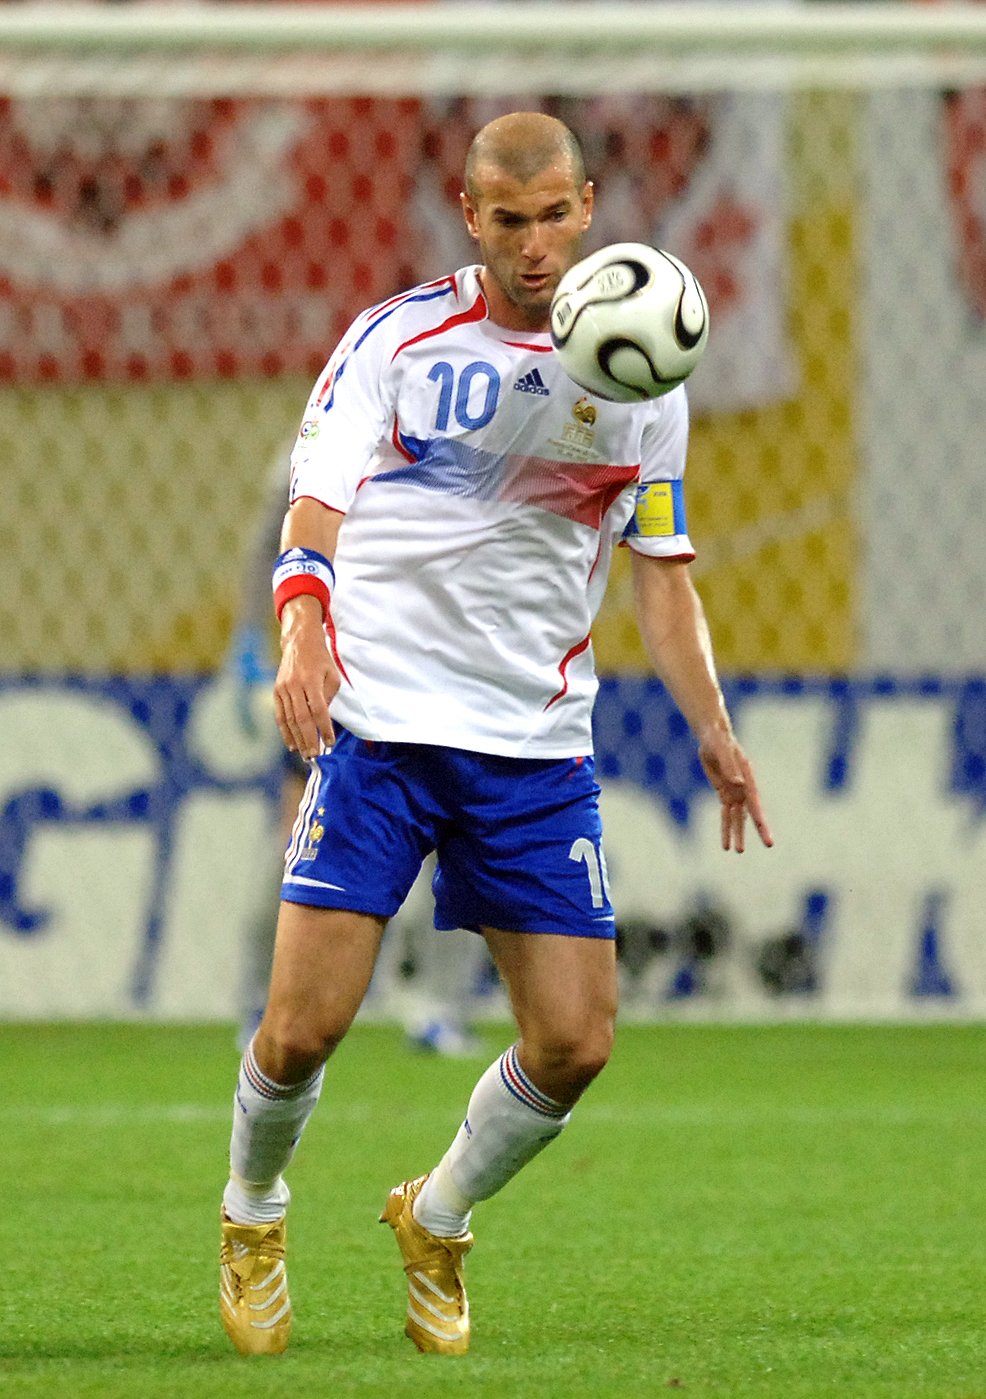 Zinedine Zidane prozradil svůj nejoblíbenější gól